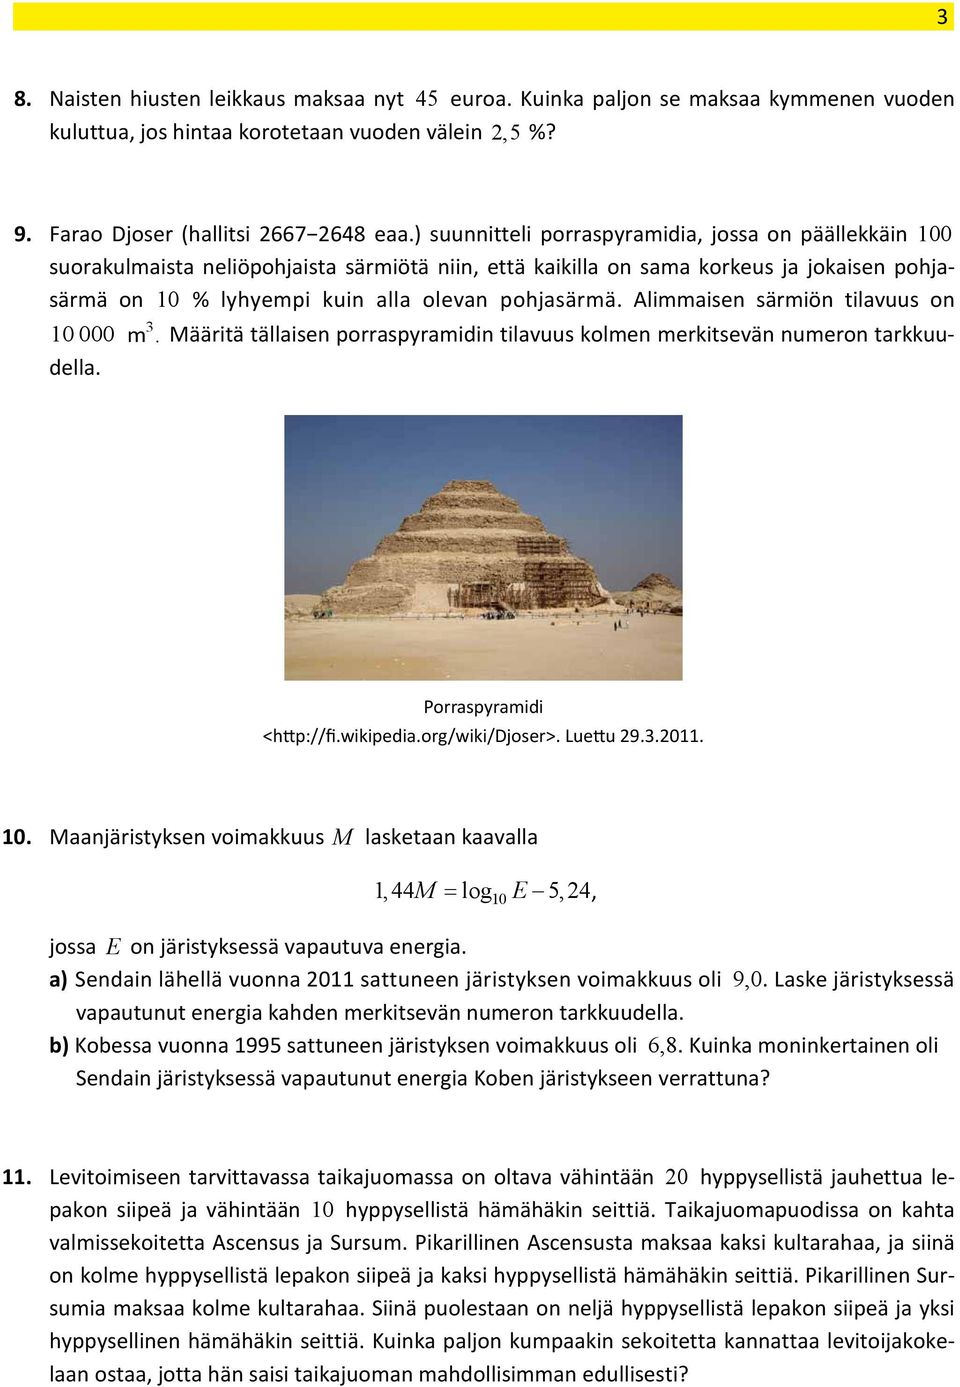 ) suunnitteli porraspyramidia, jossa on päällekkäin 00 9. Farao Djoser (hallitsi 667 648 eaa.) suunnitteli porraspyramidia, jossa on päällekkäin 00 9. suorakulmaista Farao Djoser (hallitsi neliöpohjaista 667 648 särmiötä eaa.